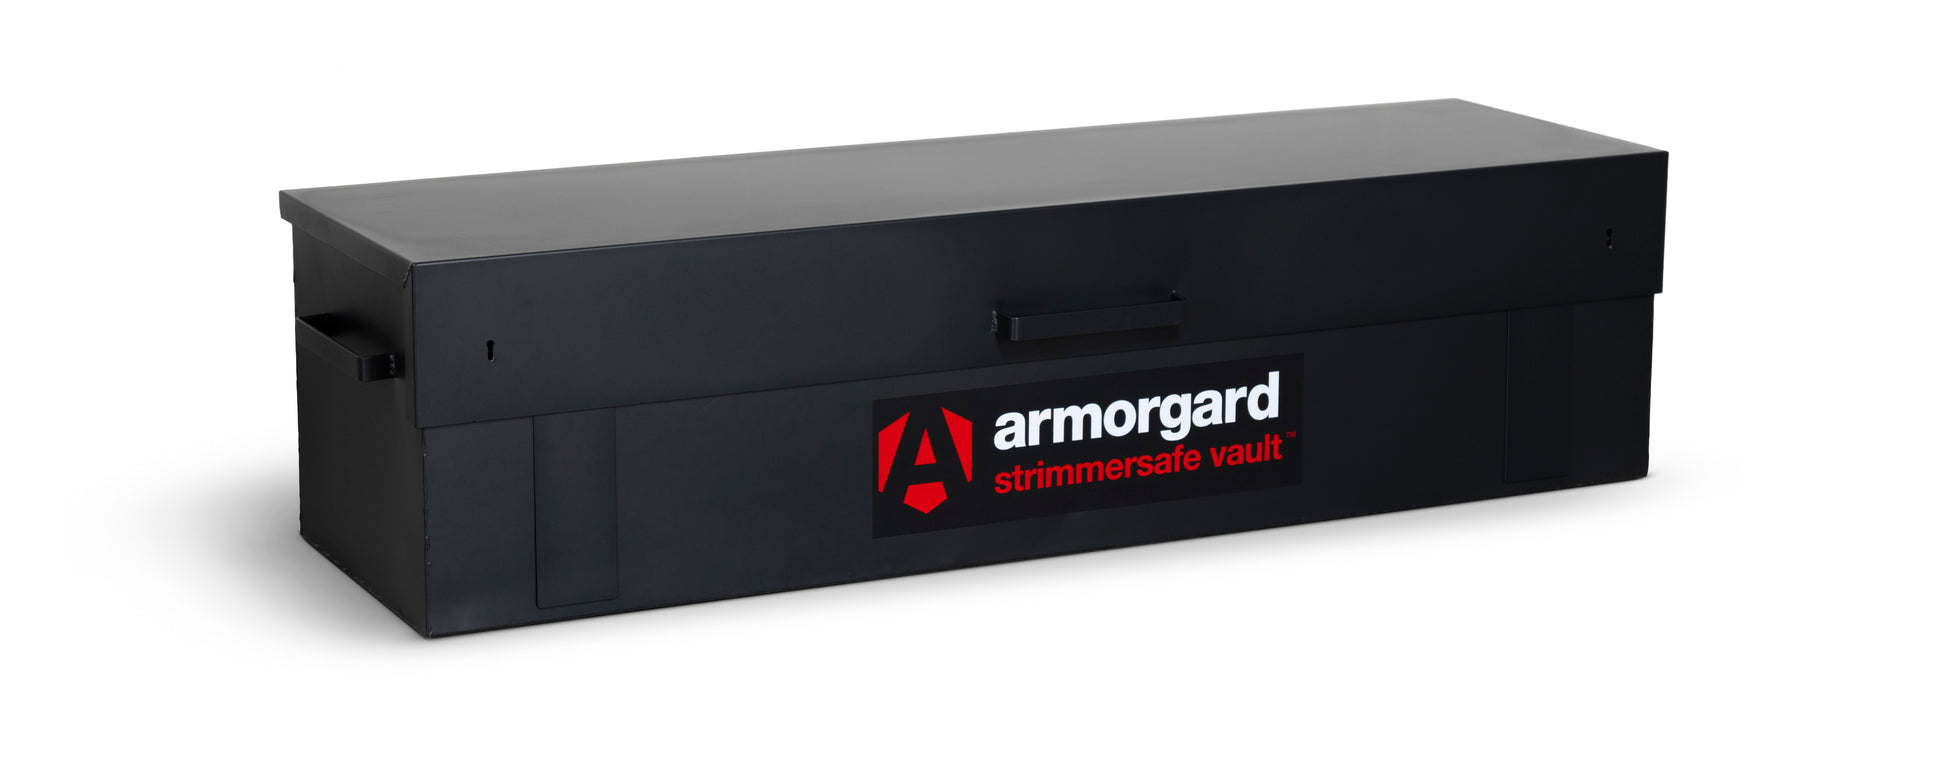 Armorgard - STRIMMERSAFE VAULT StrimmerSafe Vault 1800x555x445